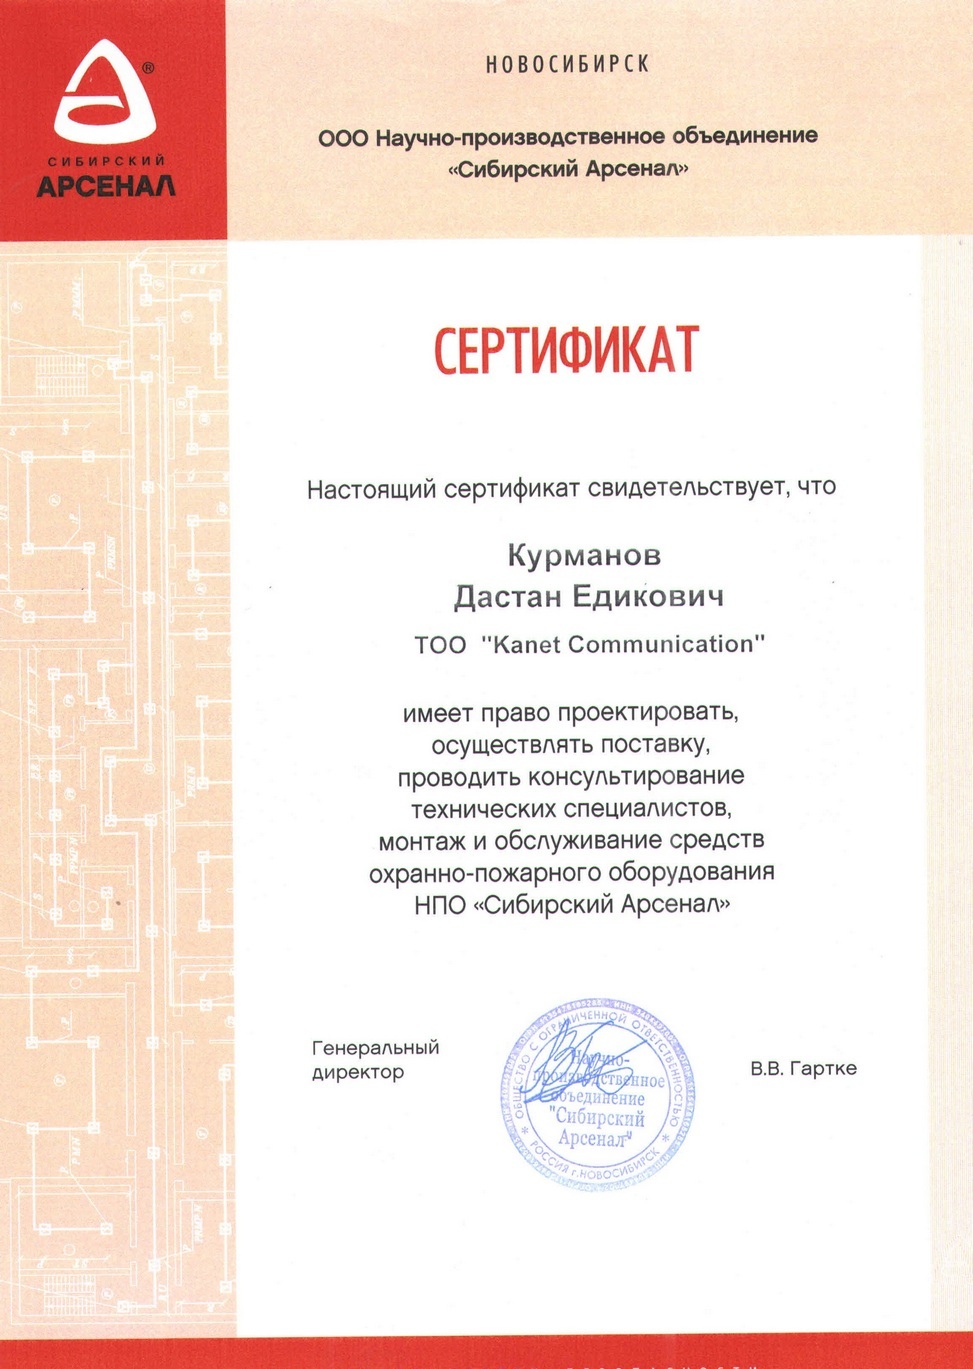 Сертификат компании Сибирский Арсенал